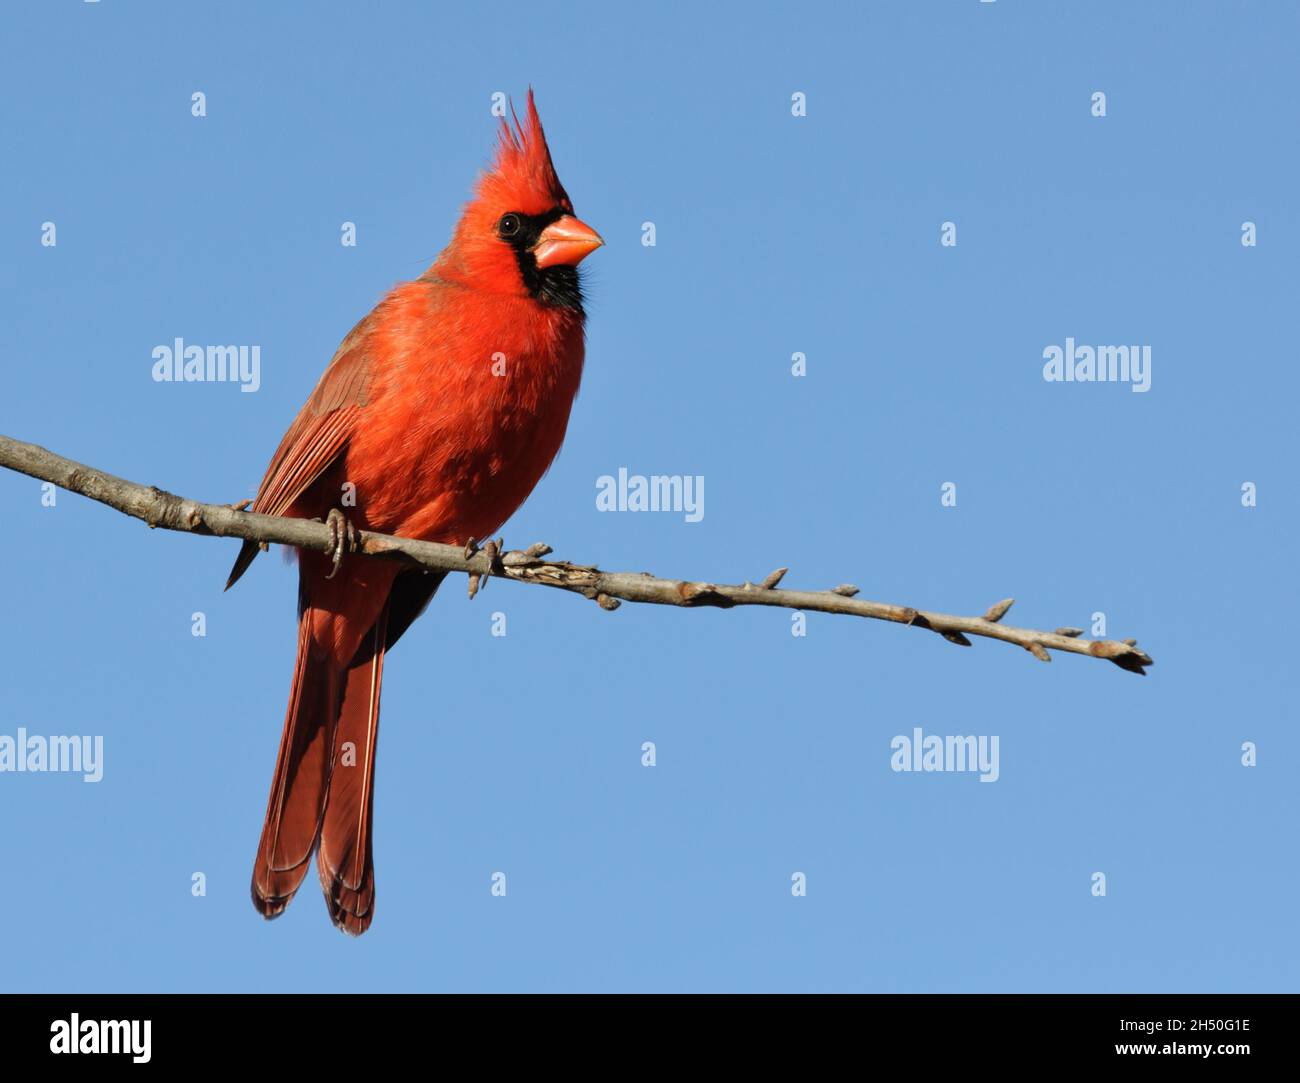 Brillante rojo masculino Northern Cardinal sentado en una rama de roble, con fondo azul cielo claro; con espacio de copia Foto de stock